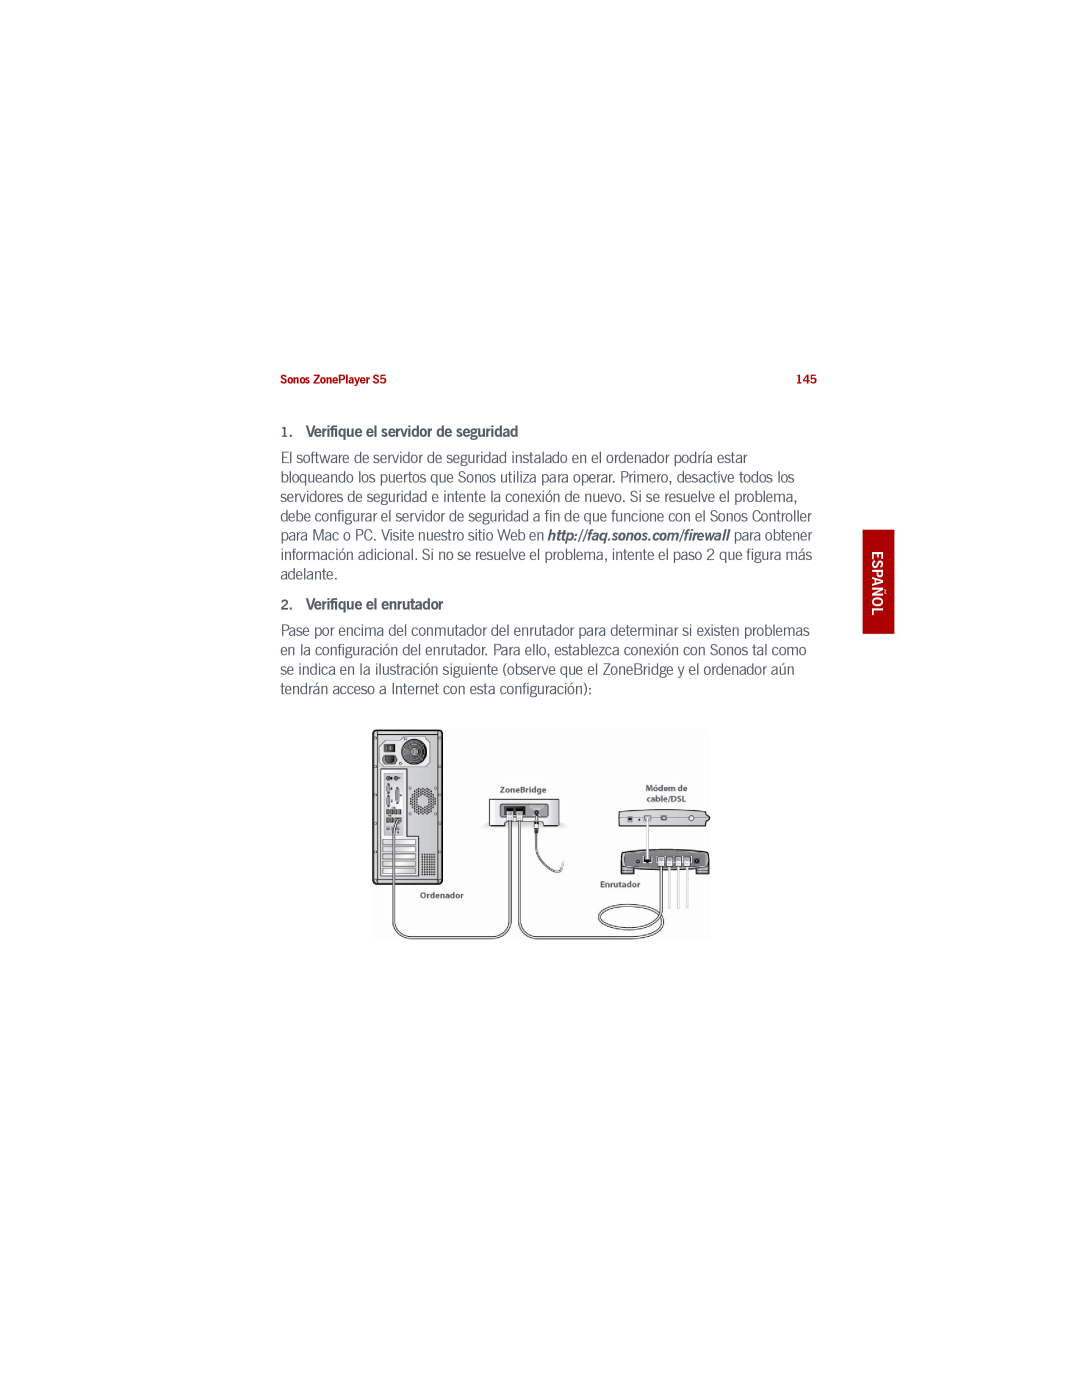 Sonos manual Verifique el servidor de seguridad, Verifique el enrutador, Español Nederlands Svenska, Sonos ZonePlayer S5 